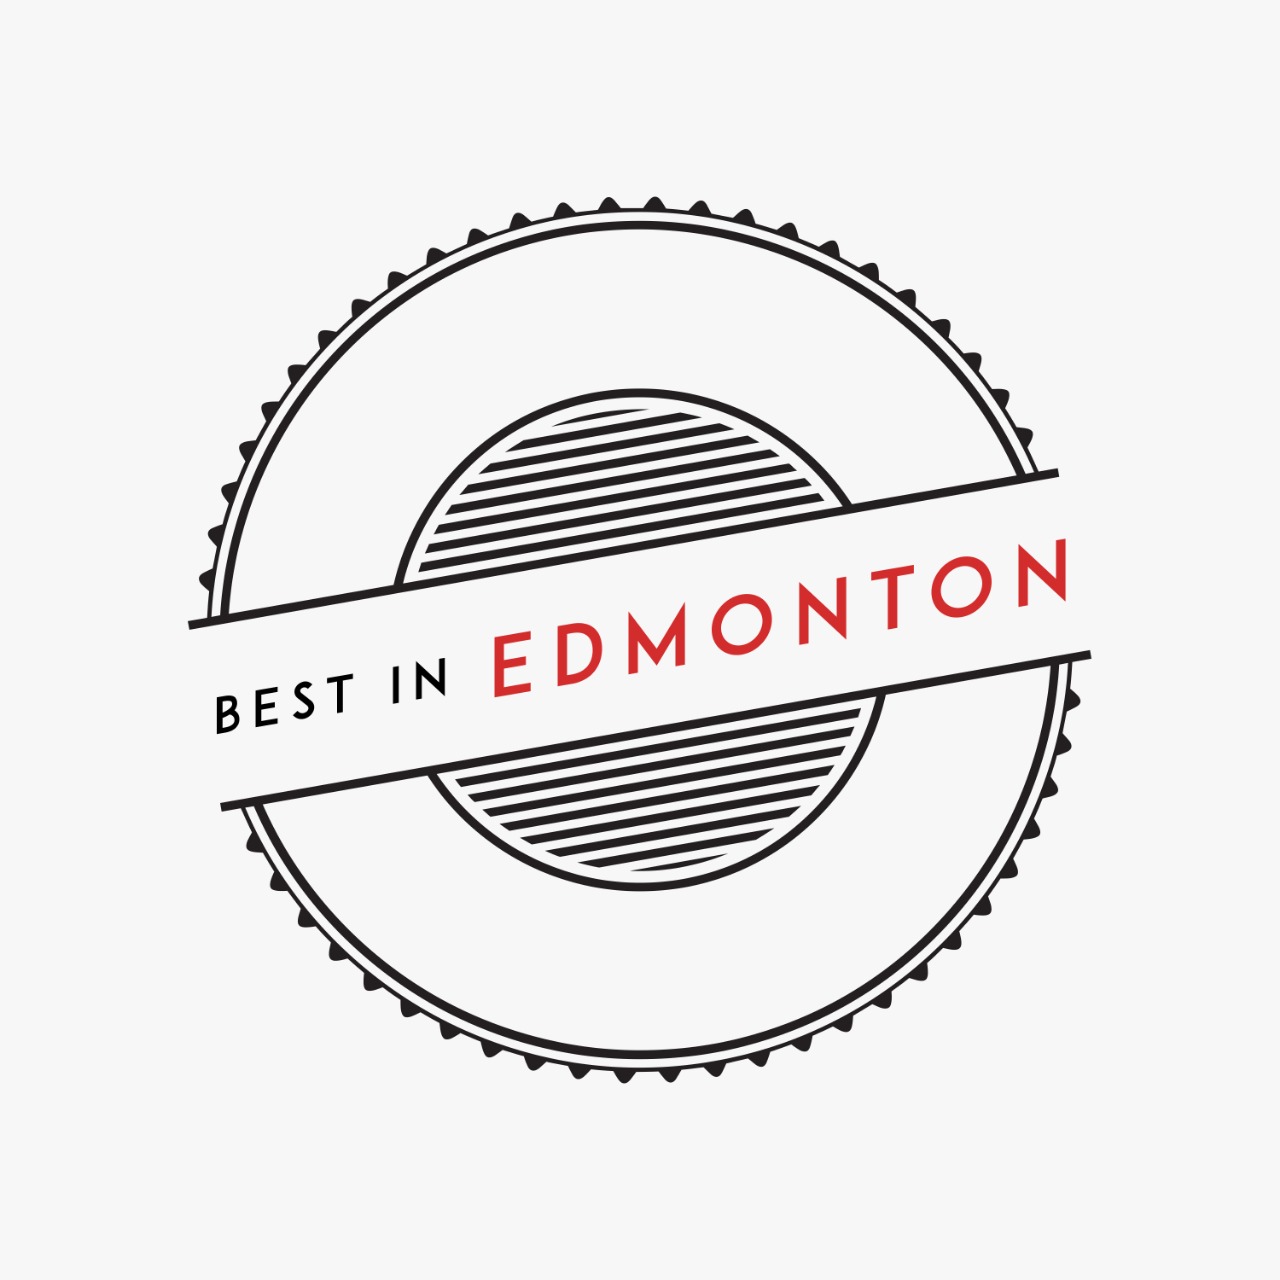 Best in Edmonton Award